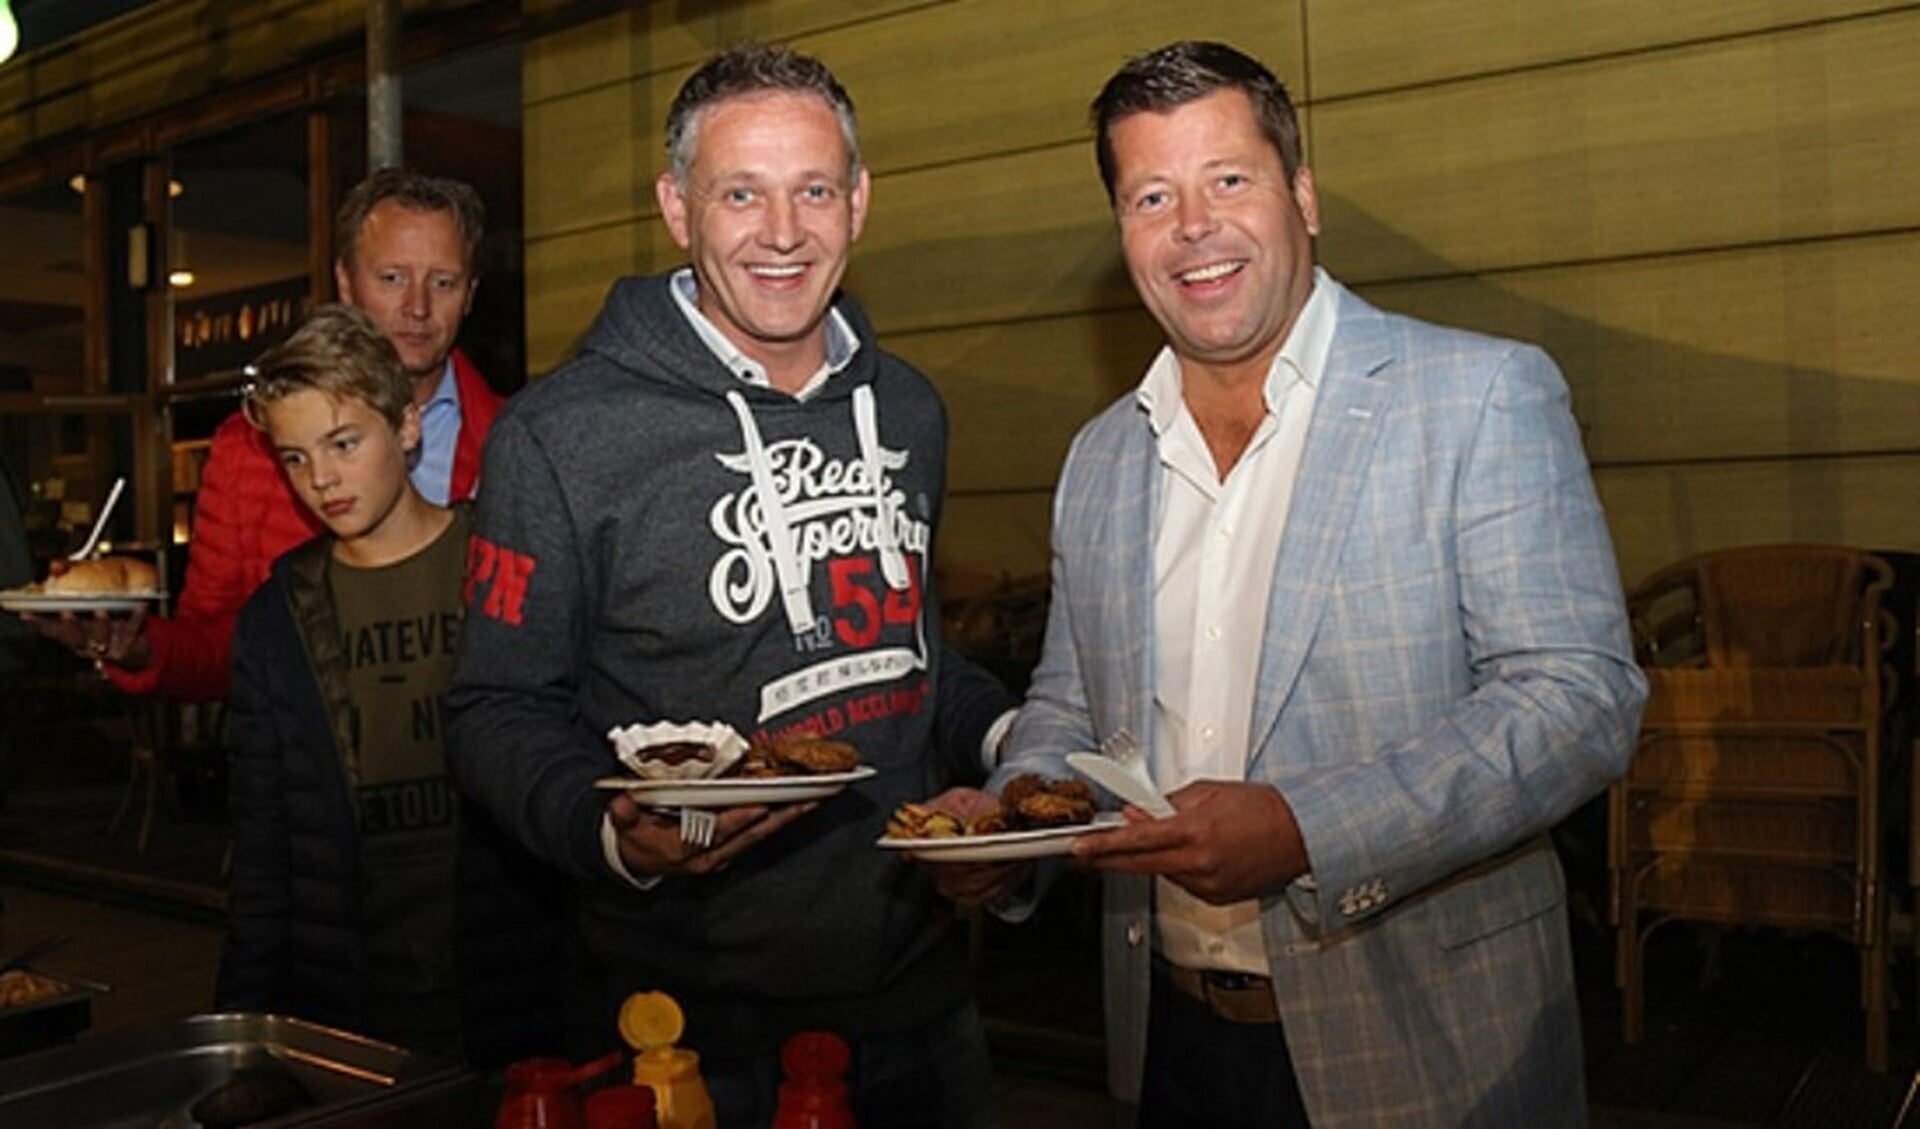 Hoofdtrainer Dick Boereboom en sponsor Jan-Willem Dijksman tijdens een barbecue in 2017. Foto: Sander de Hollander